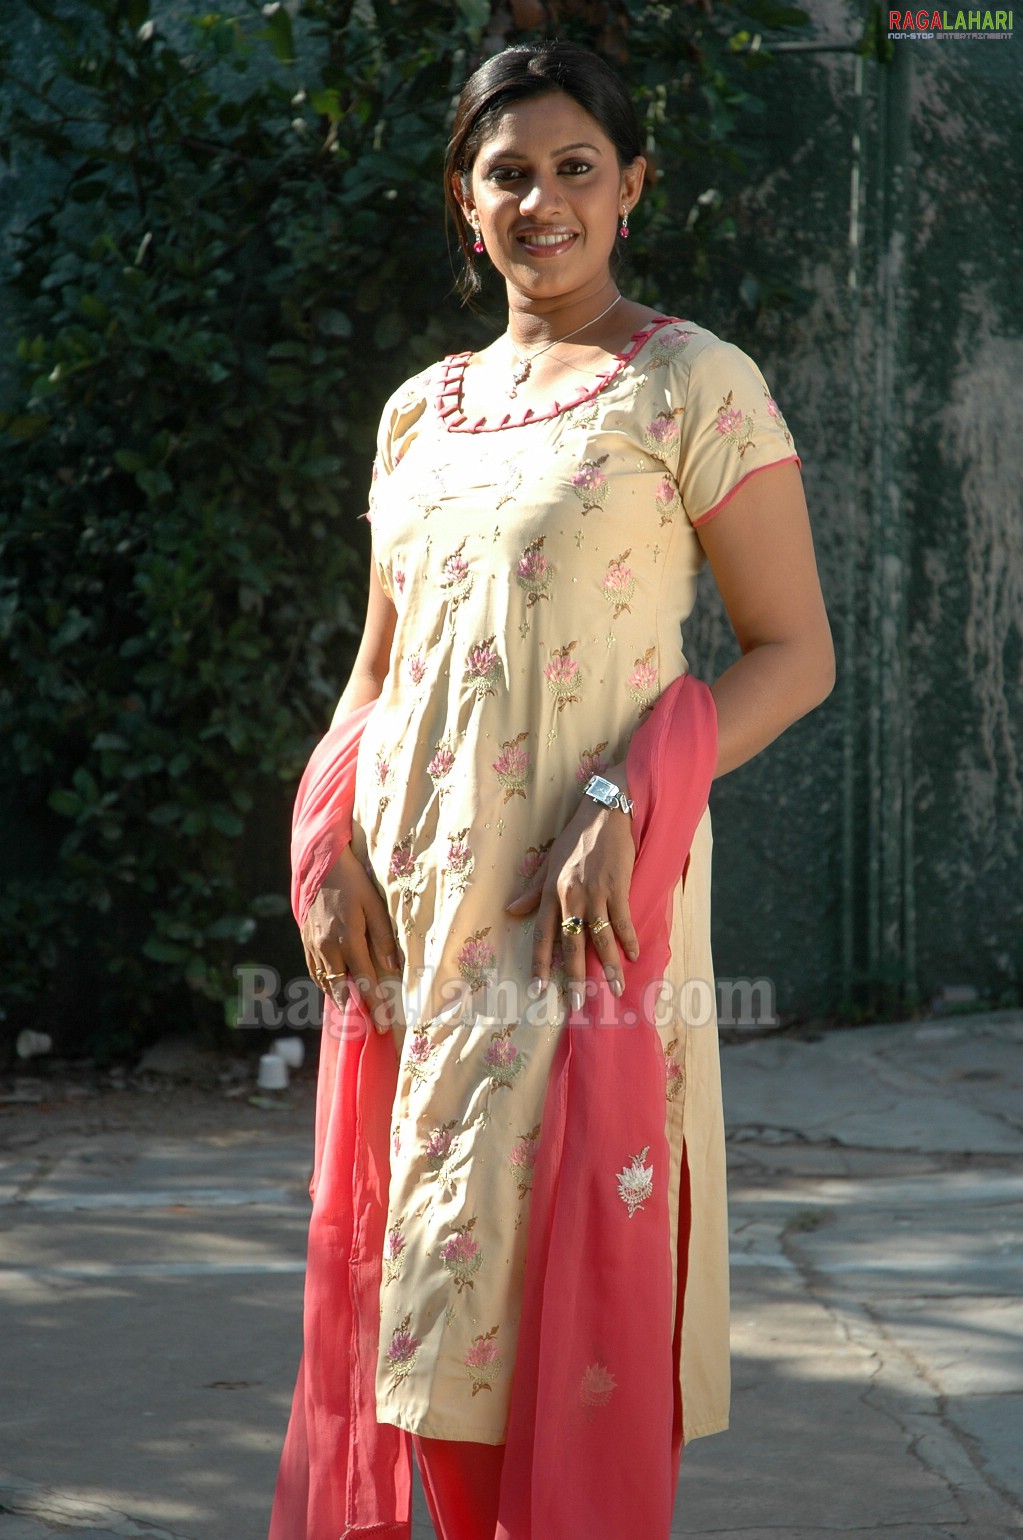 Meera Krishna